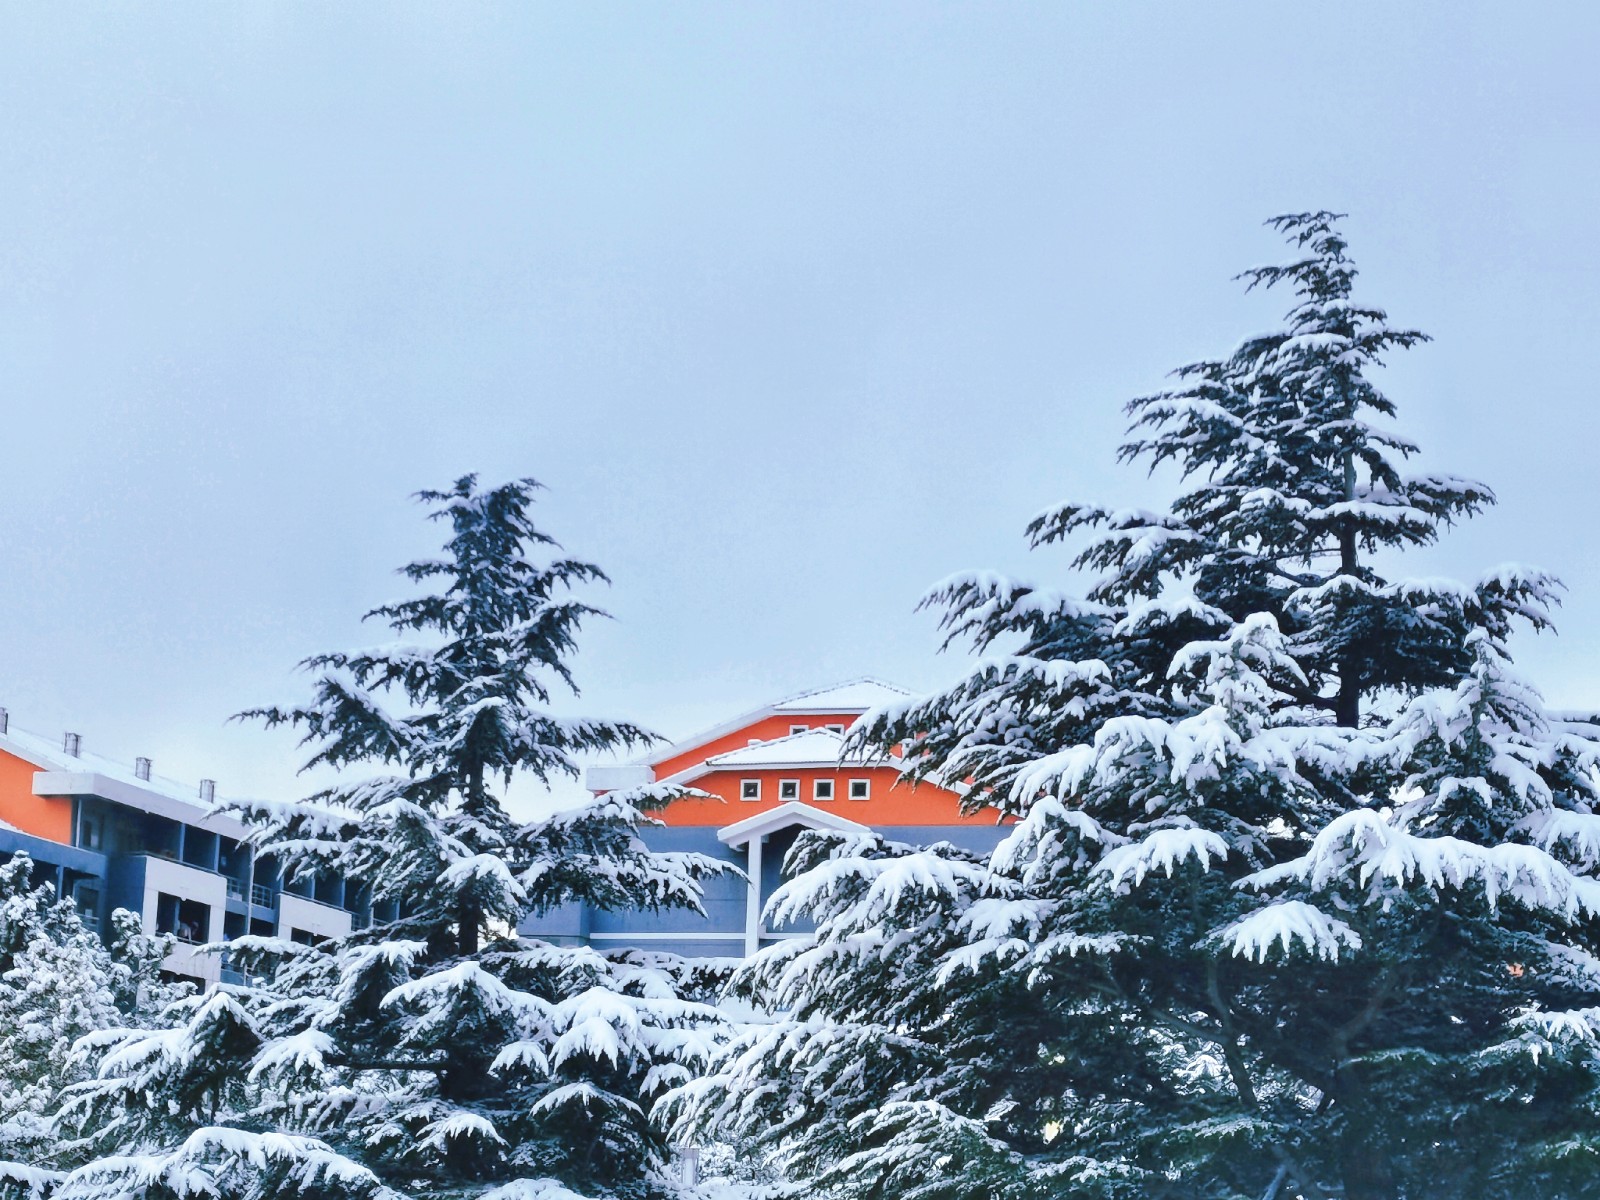 如果可以，一起去看雪吧！ 李佳宁 滨州医学院中西医结合学院